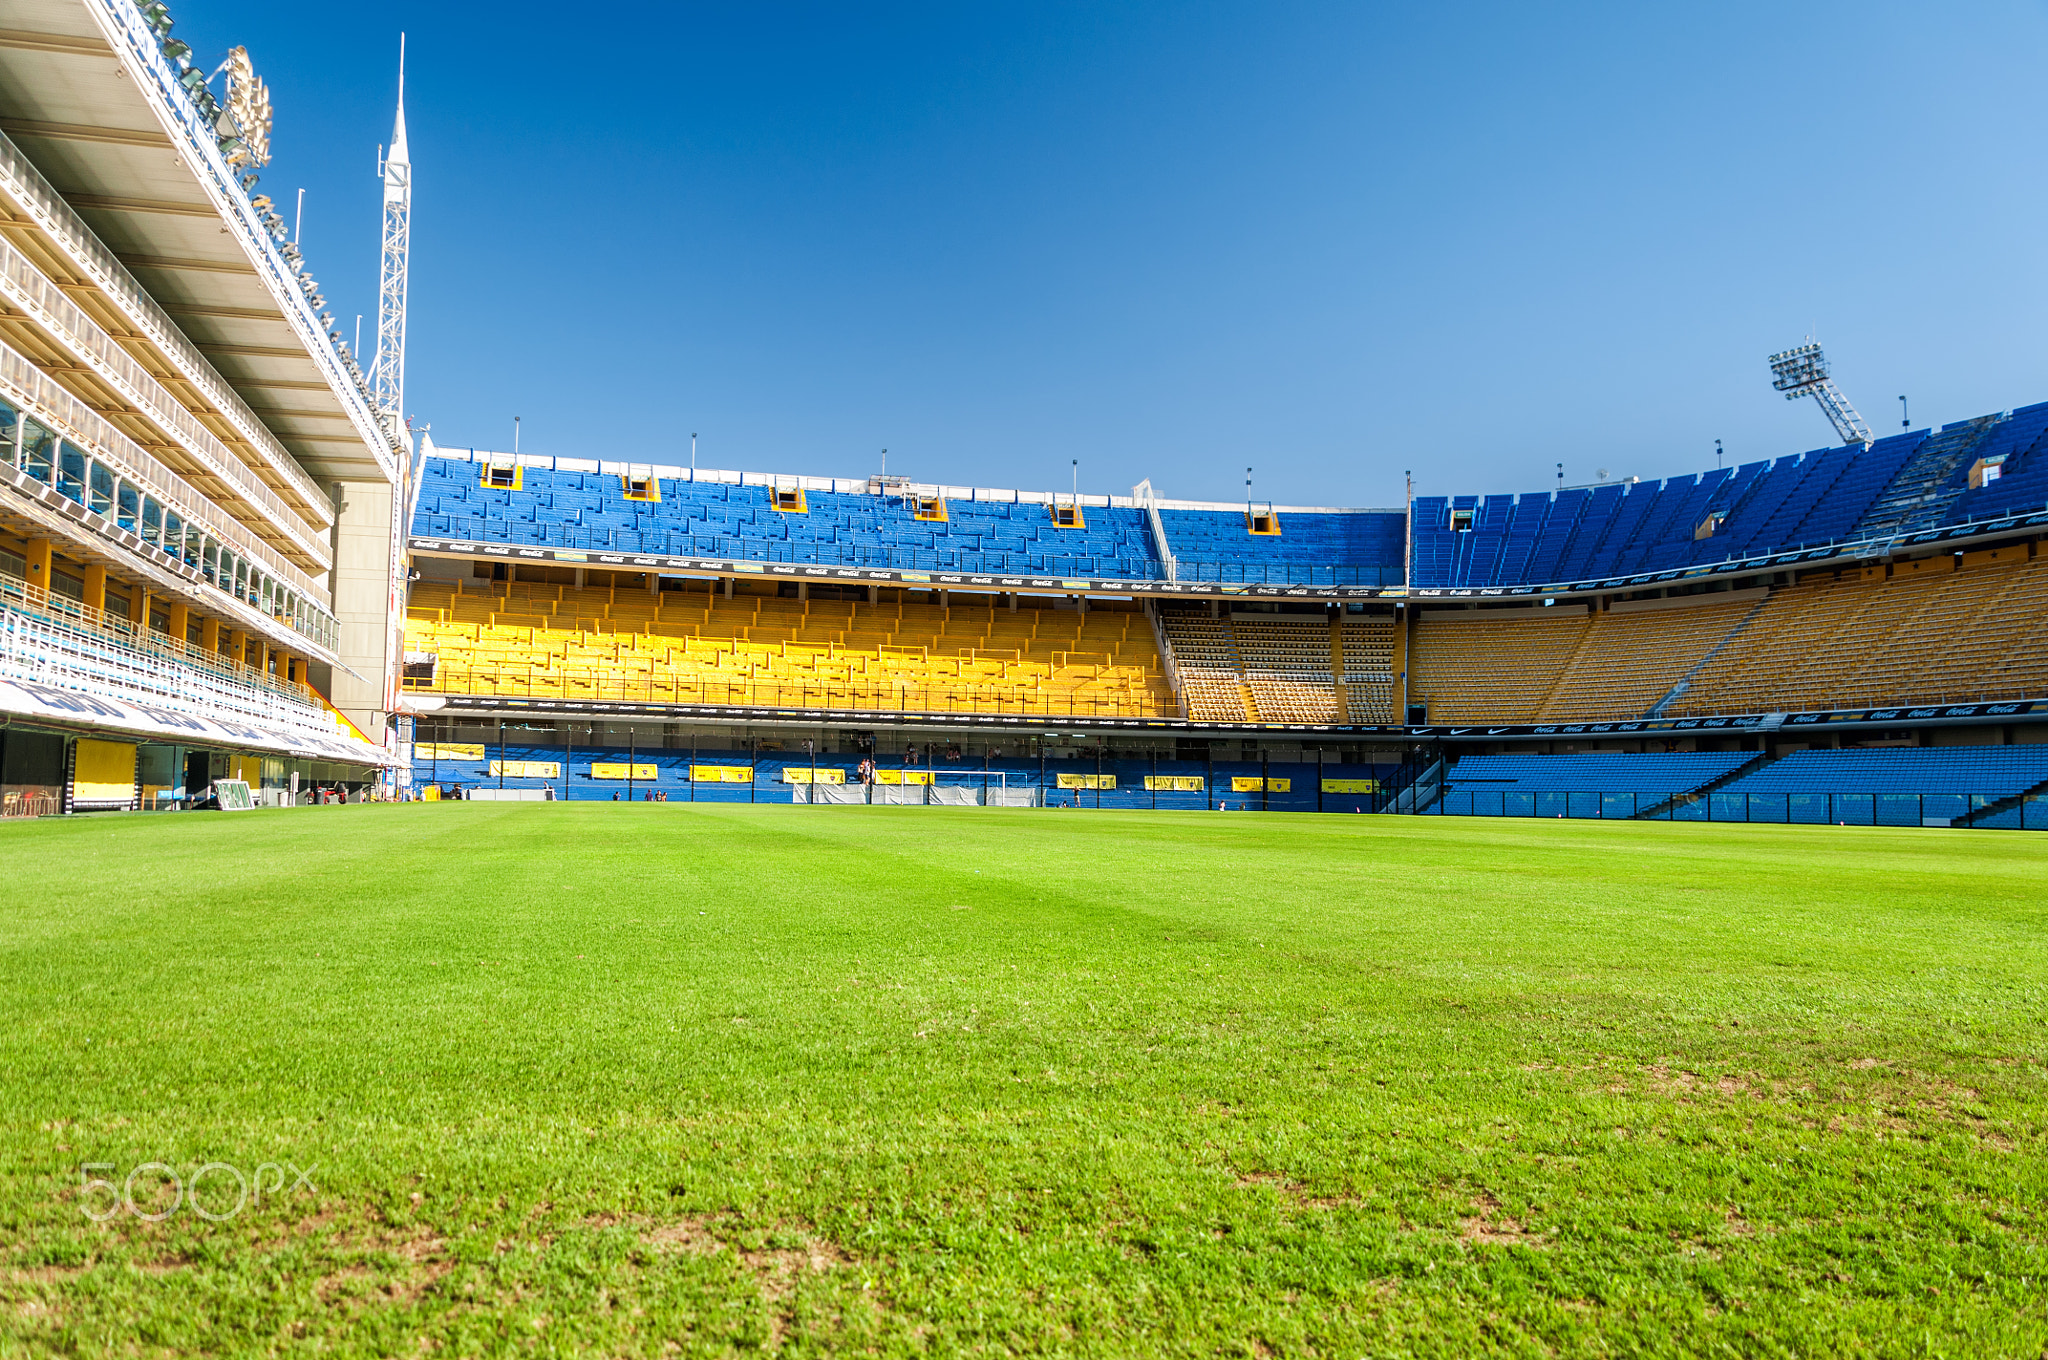 Empty Stadium